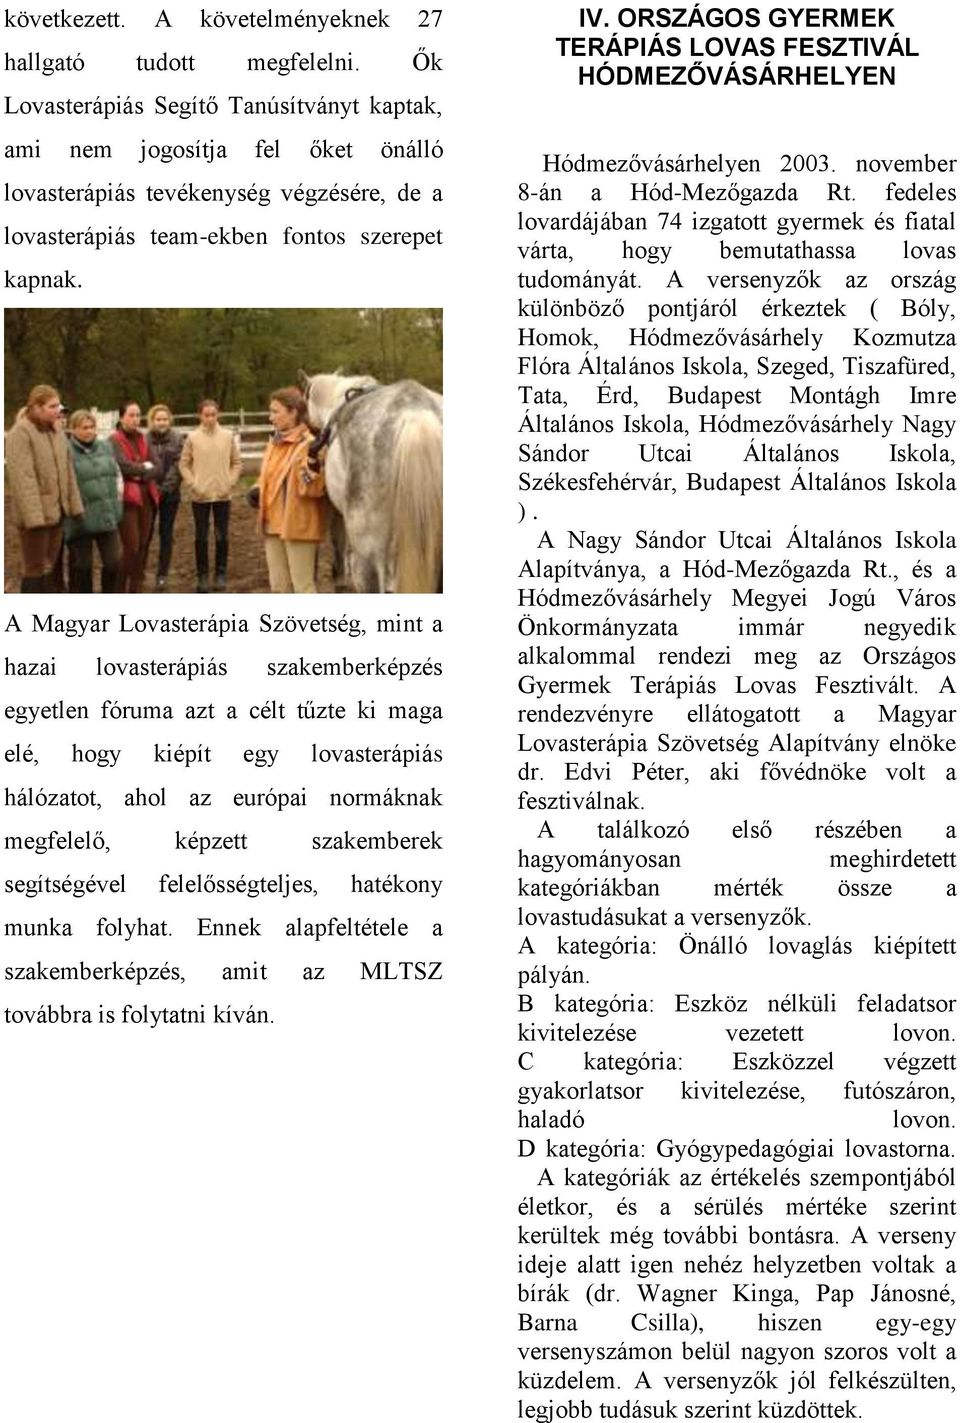 A Magyar Lovasterápia Szövetség, mint a hazai lovasterápiás szakemberképzés egyetlen fóruma azt a célt tűzte ki maga elé, hogy kiépít egy lovasterápiás hálózatot, ahol az európai normáknak megfelelő,